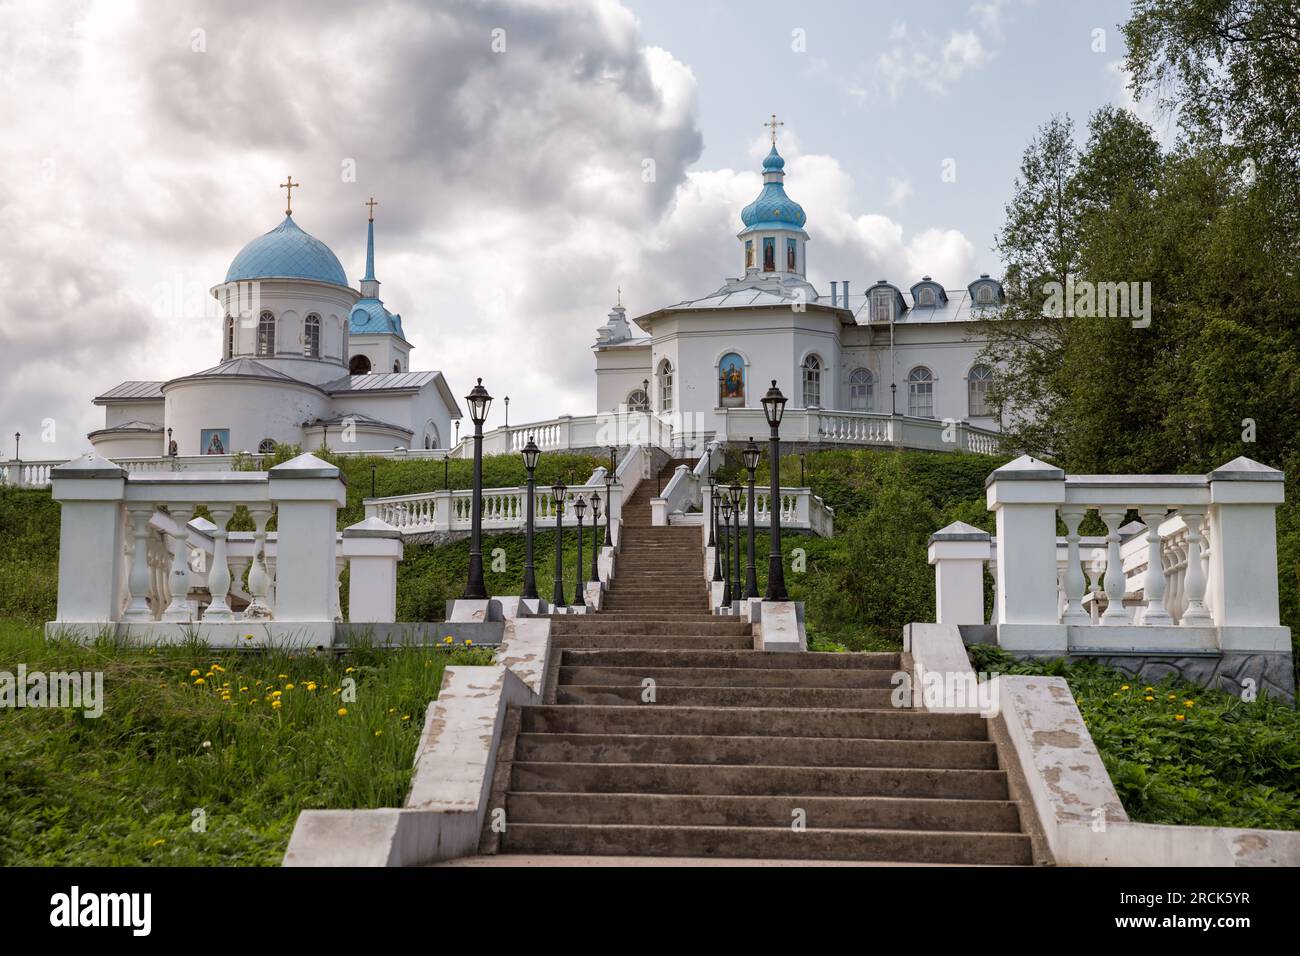 Temples du monastère Pokrovo-Tervenichsky, région de Leningrad, Russie Banque D'Images